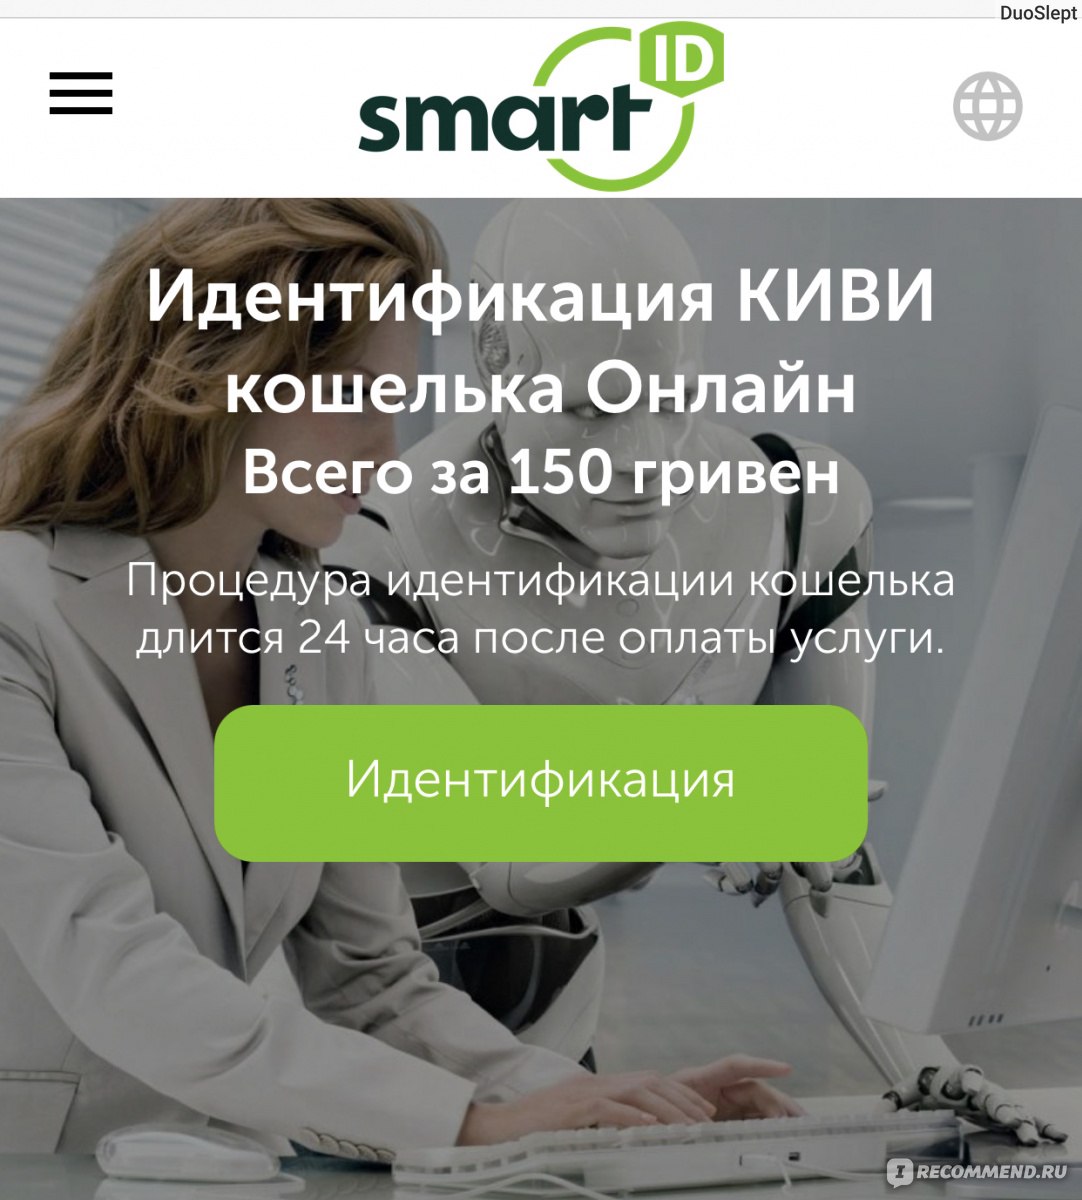 Интернет Магазин Оплата Qiwi Украина